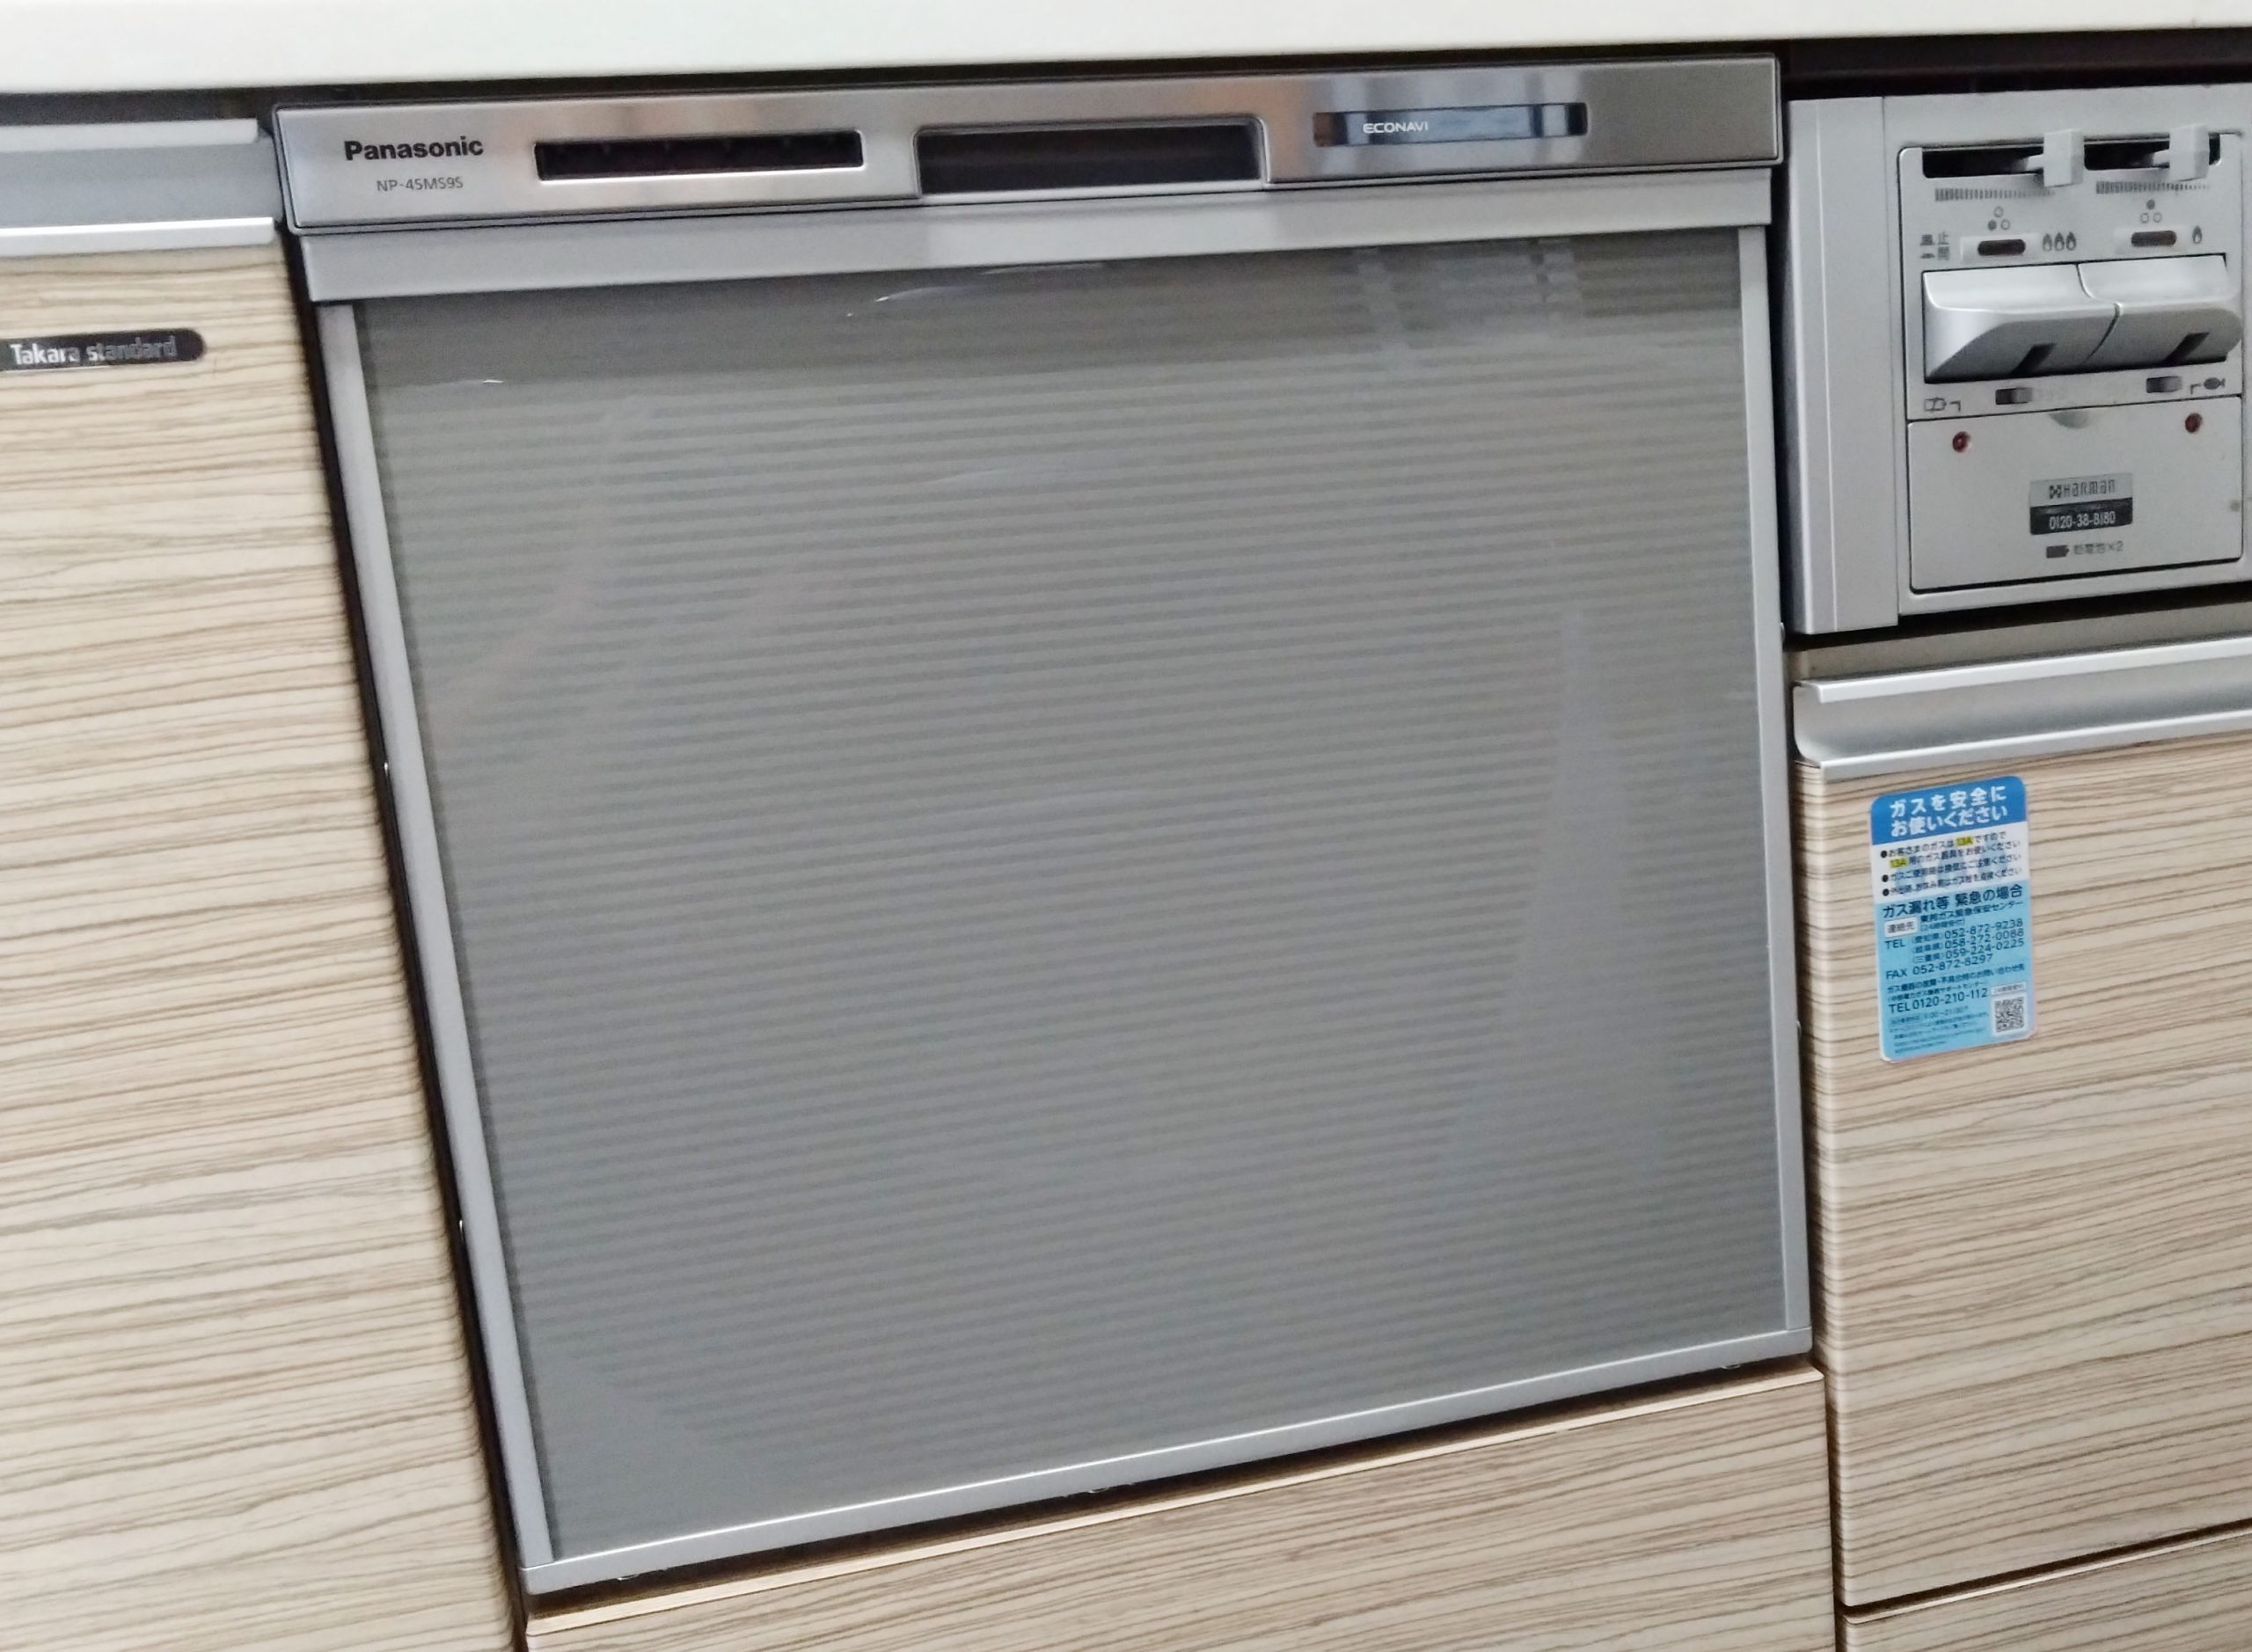 パナソニック ビルトイン食洗機『M9シリーズ・ミドルタイプ』/NP-45MS9S